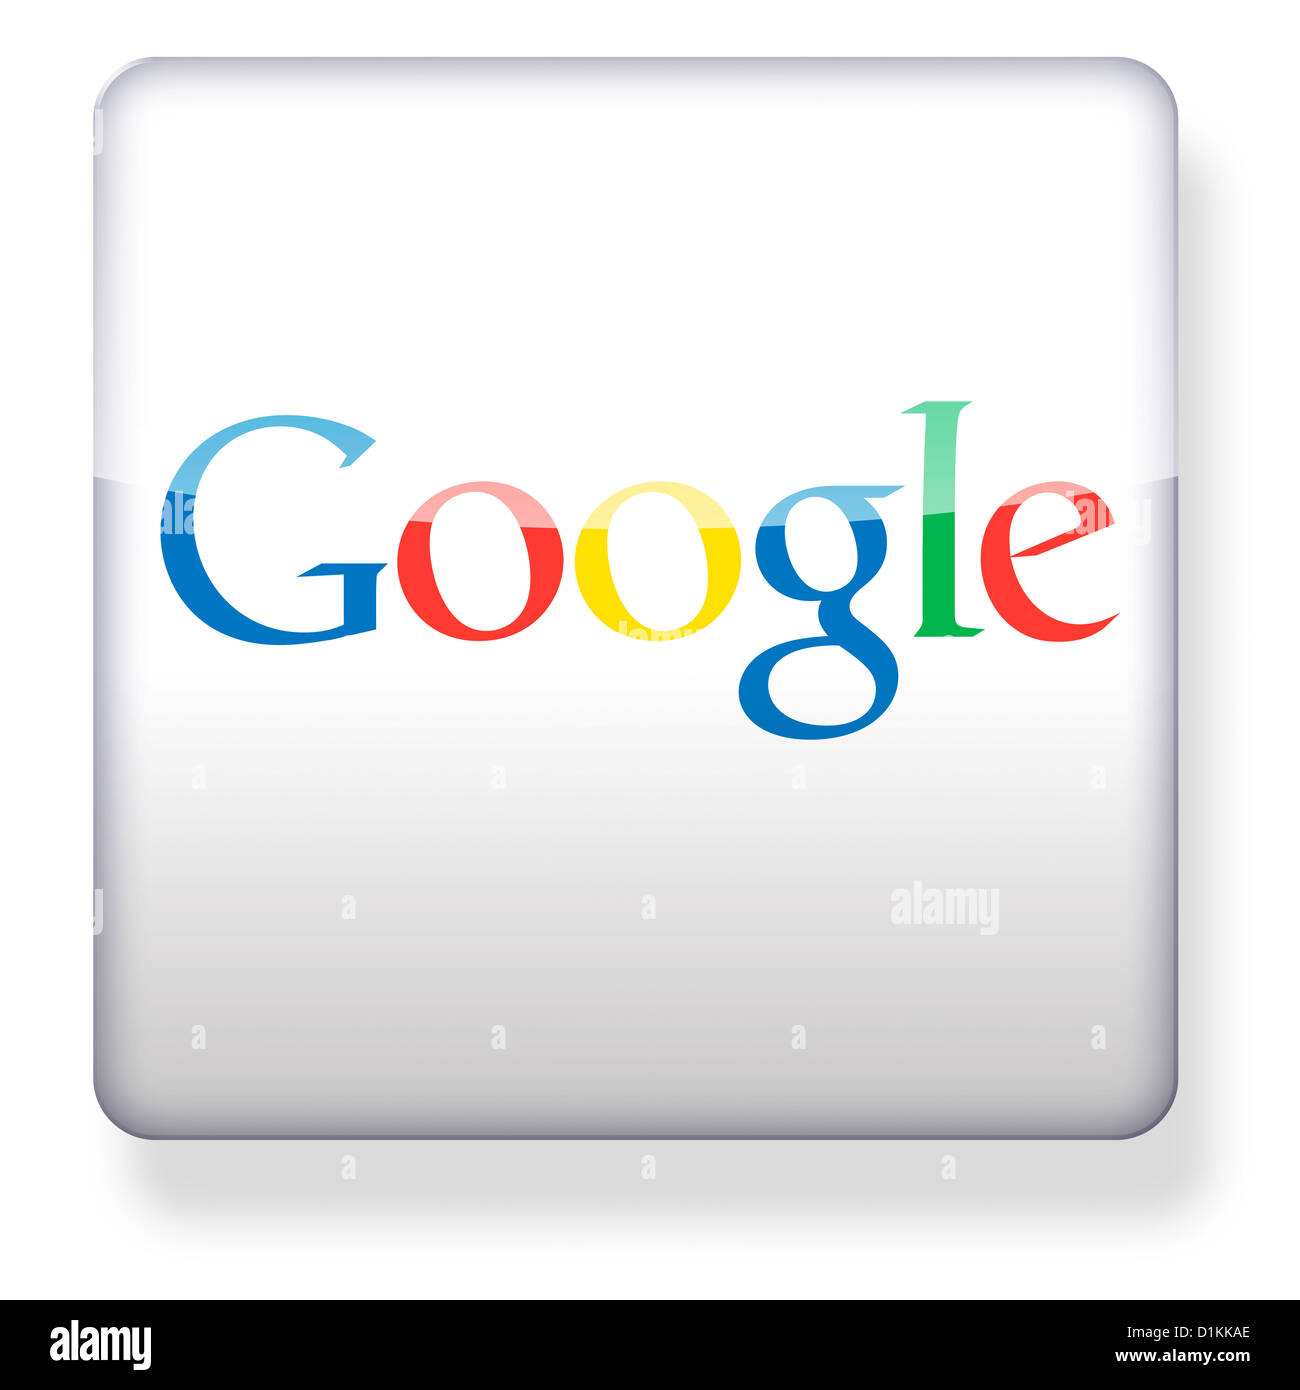 Google logo as an app icon Stock Photo